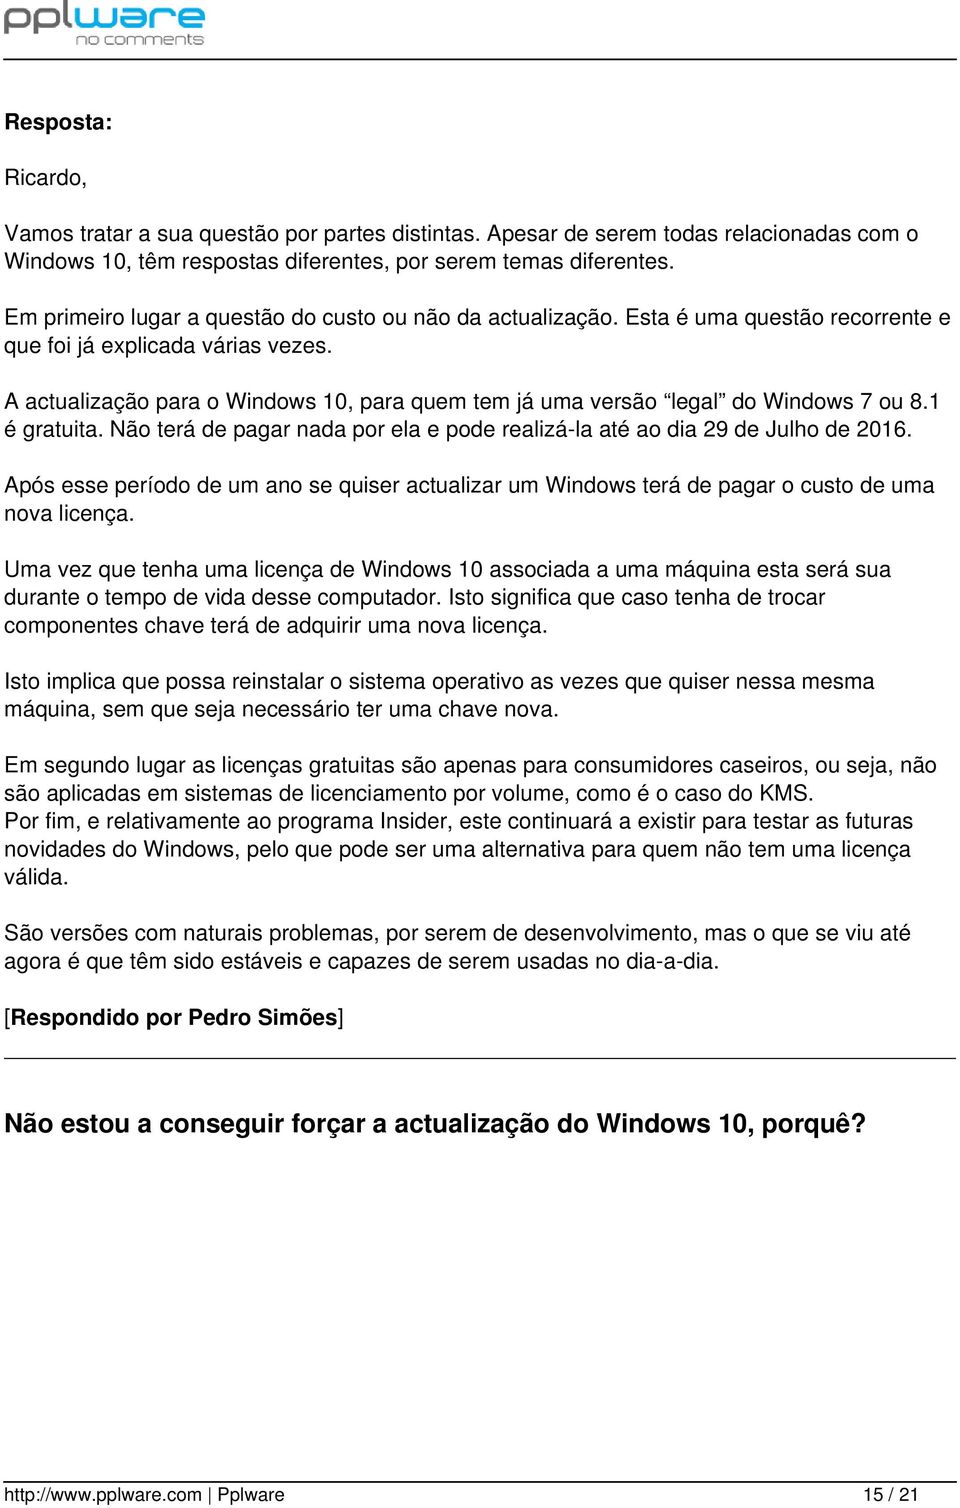 A actualização para o Windows 10, para quem tem já uma versão legal do Windows 7 ou 8.1 é gratuita. Não terá de pagar nada por ela e pode realizá-la até ao dia 29 de Julho de 2016.